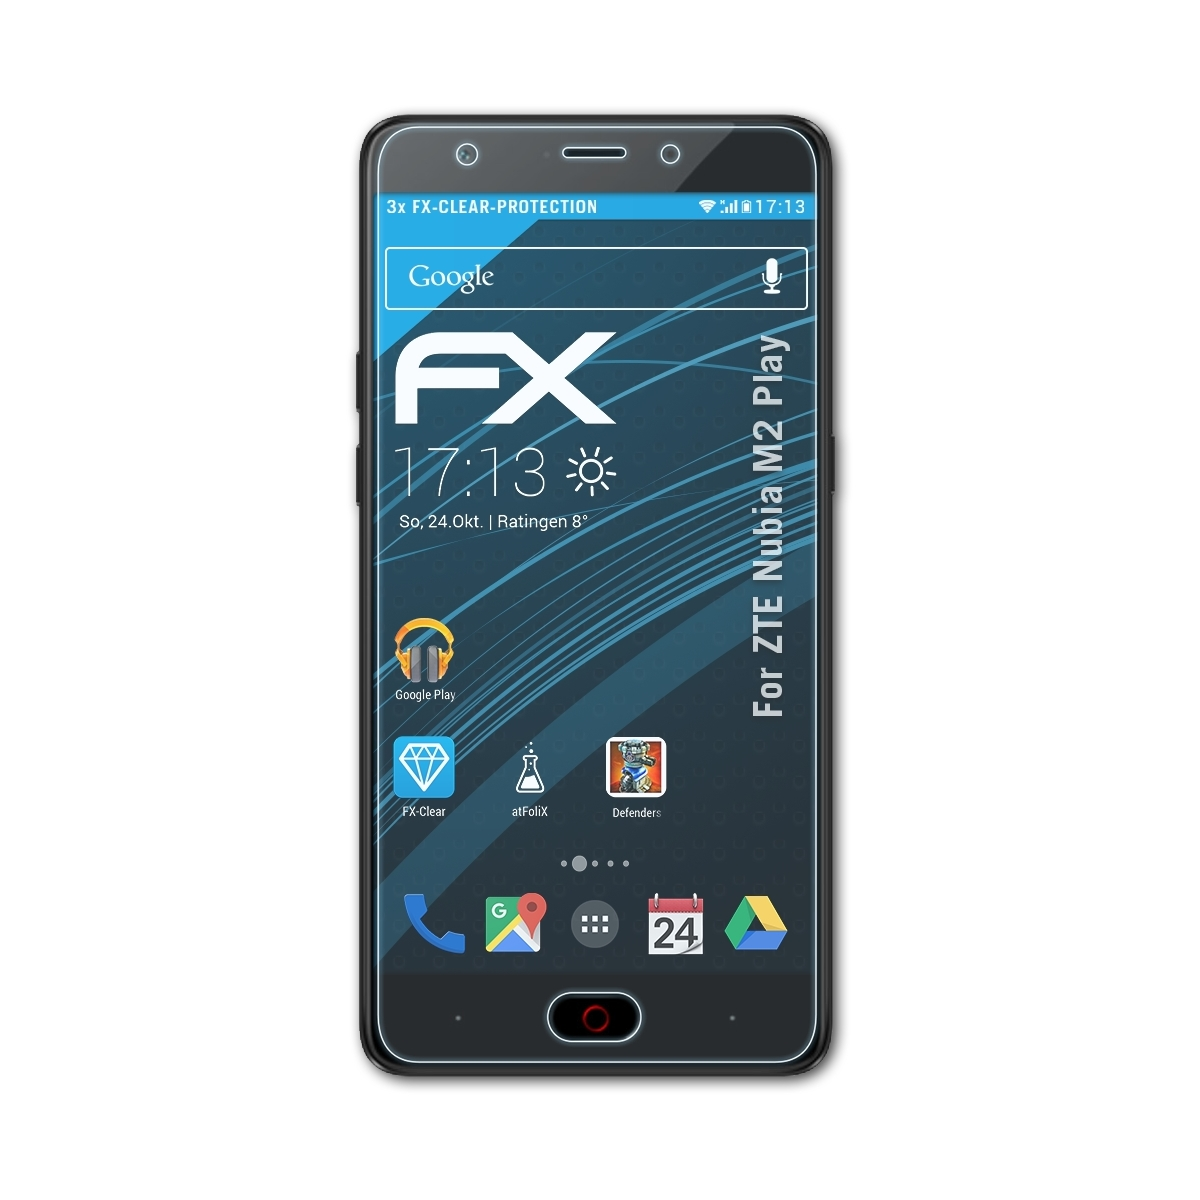 ATFOLIX 3x FX-Clear ZTE Play) M2 Displayschutz(für Nubia